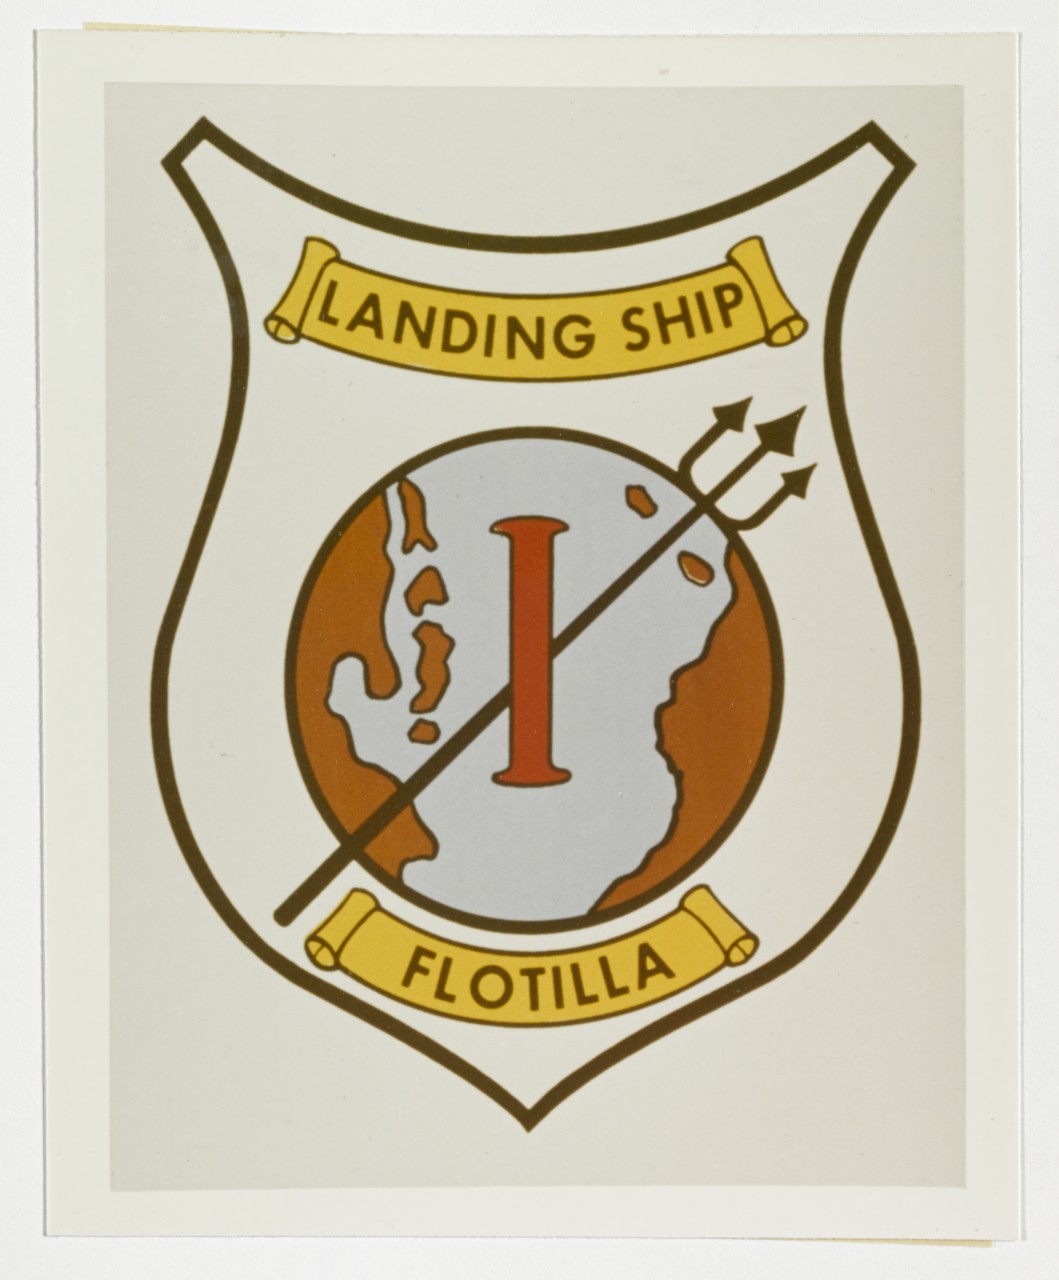 Insignia: Landing Ship Flotilla One